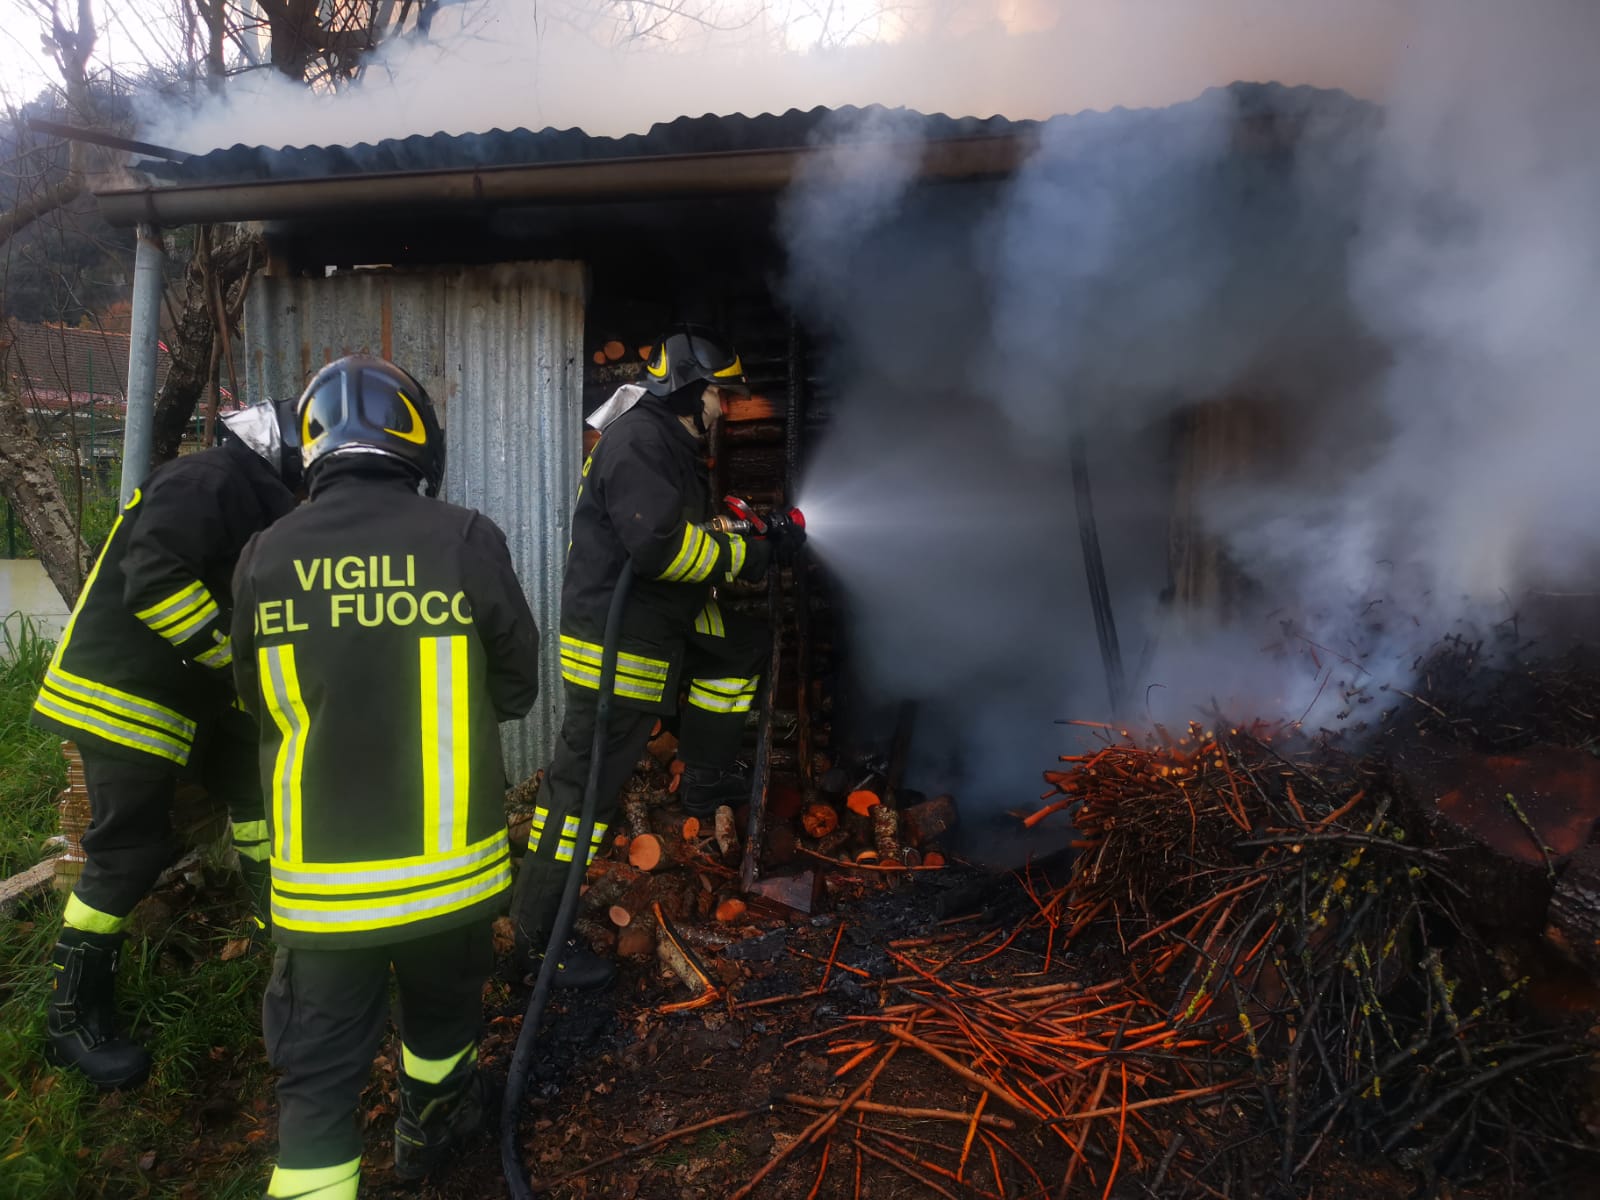 Paura a Teggiano, incendio distrugge fienile: salvi animali